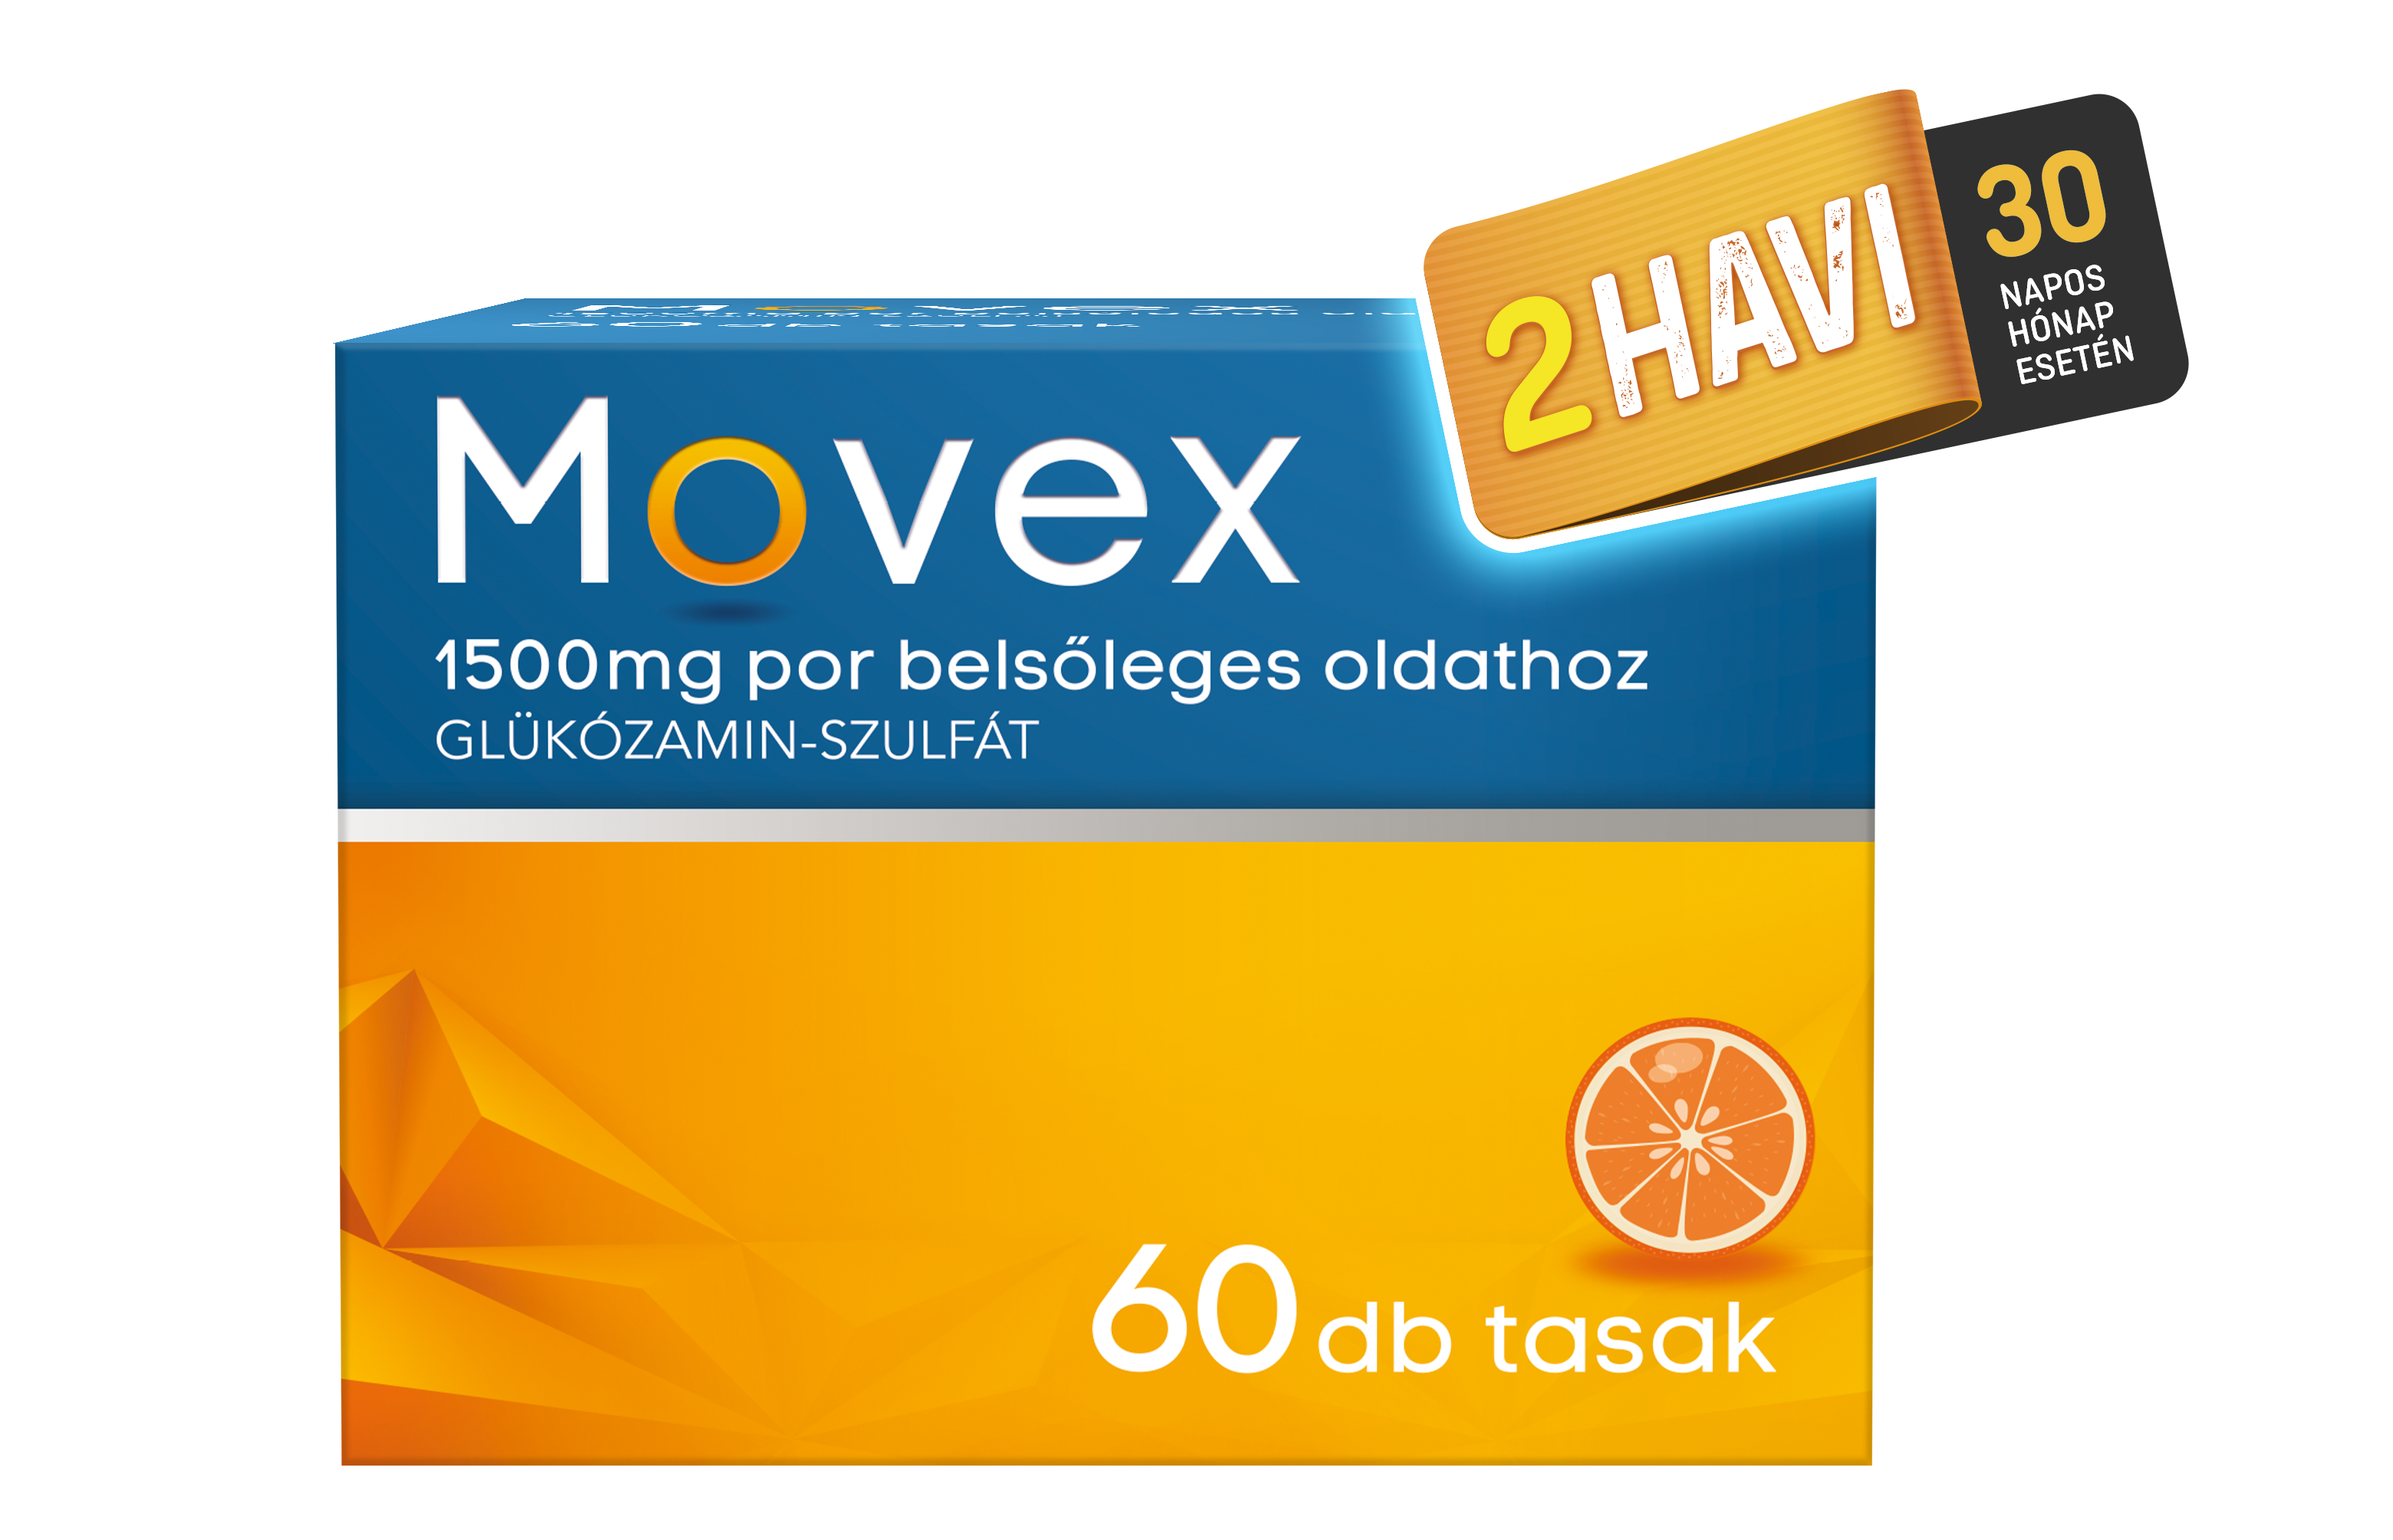 Movex 1500 mg por belsőleges oldathoz